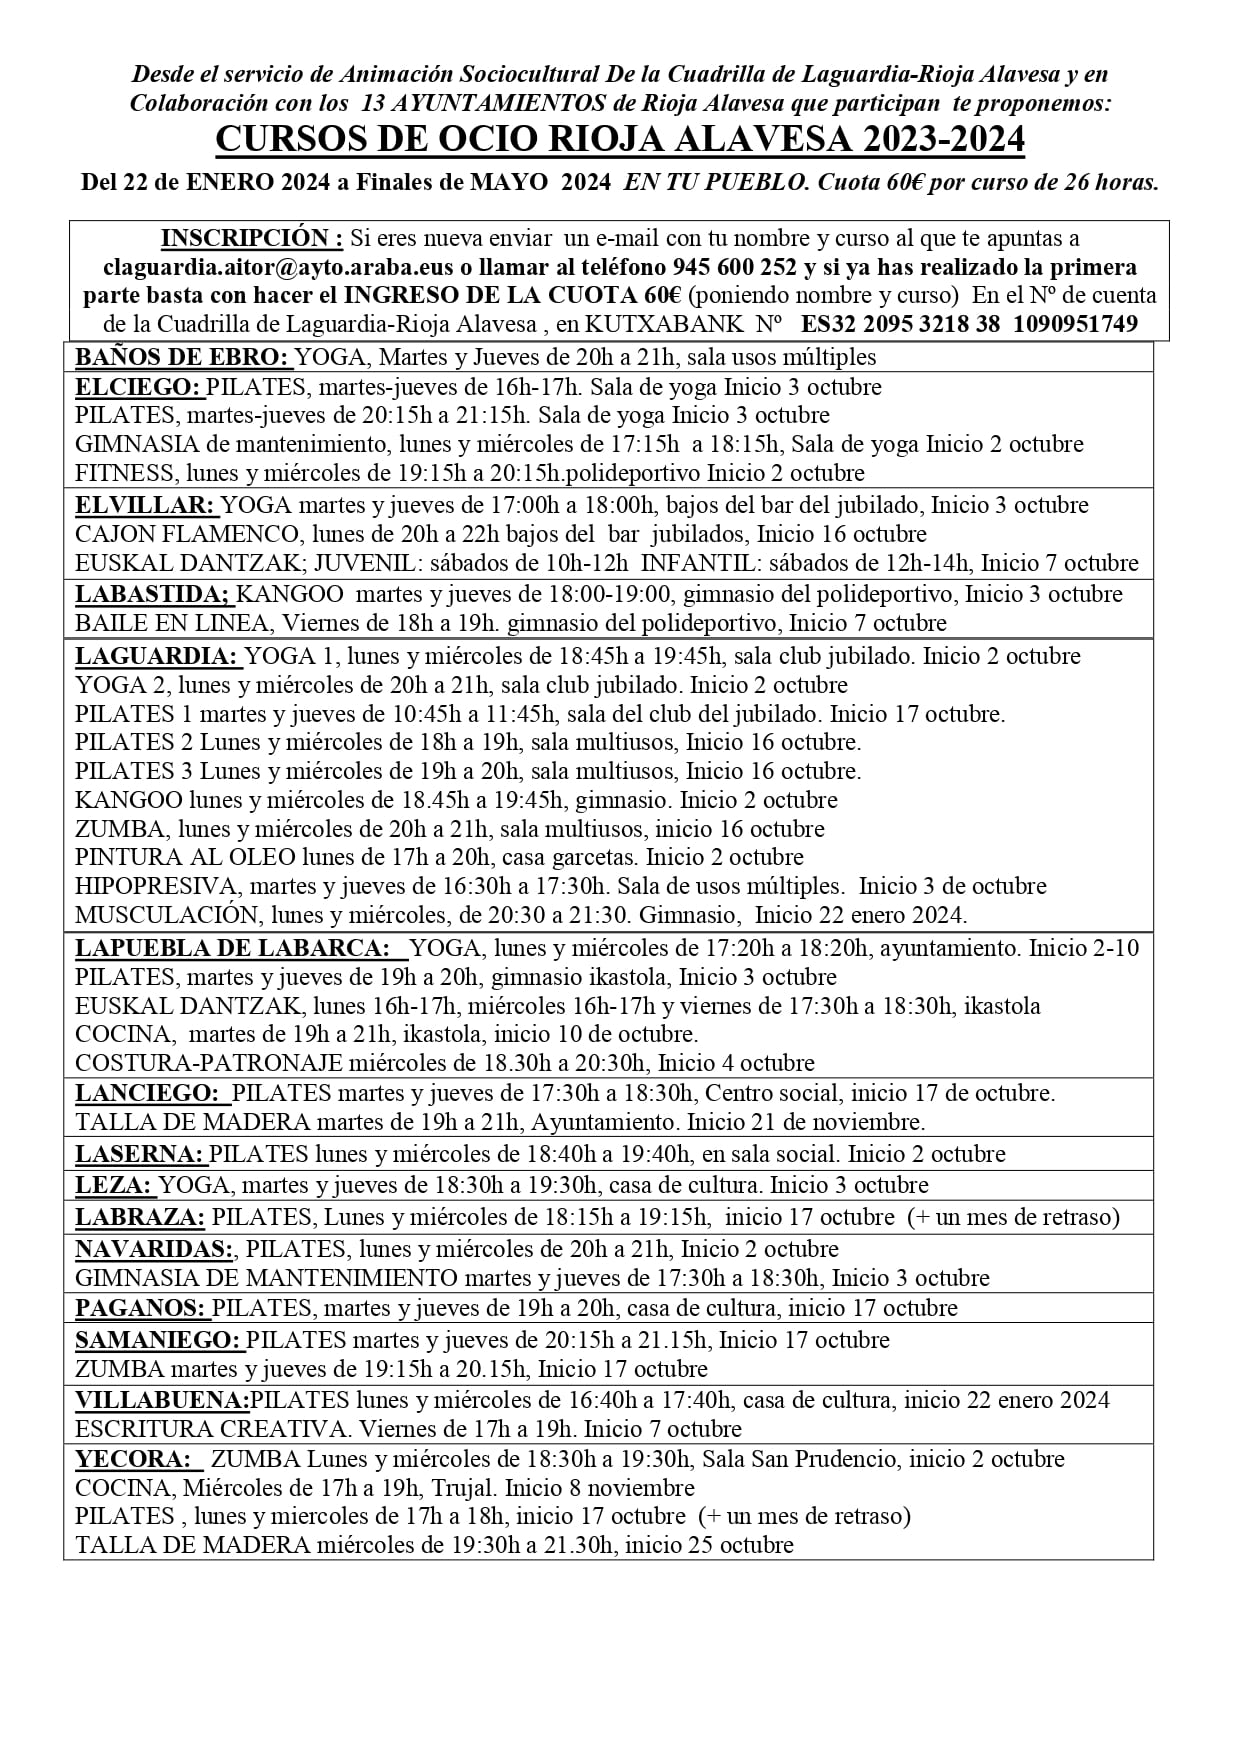 cursos de ocio Rioja alavesa segunda parte 2024 page 0002